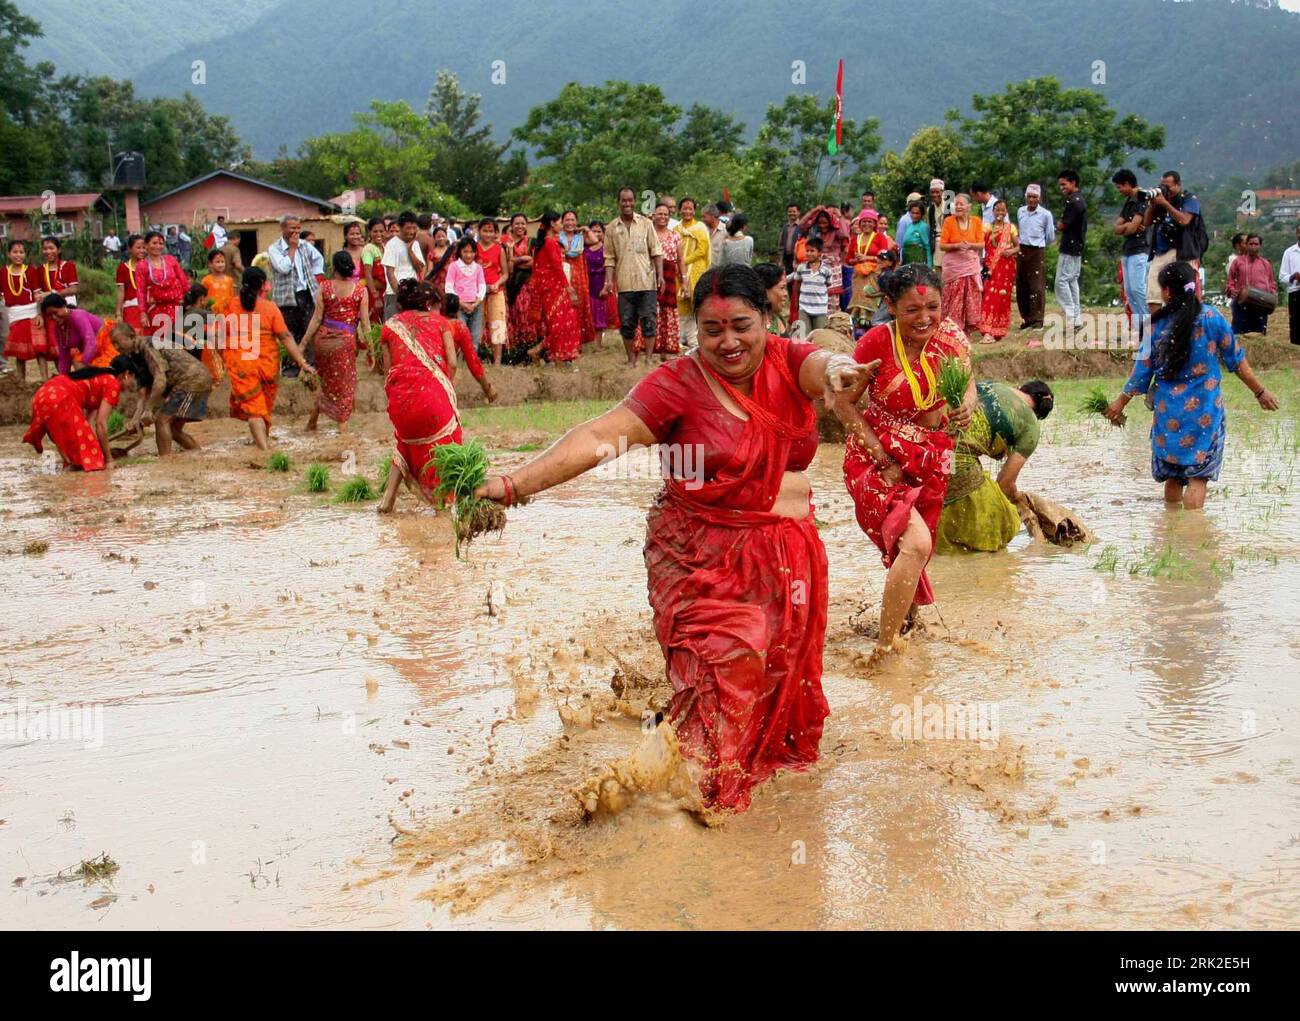 Bildnummer: 53173190 Datum: 29.06.2009 Copyright: imago/Xinhua Farmers Dance in einem Reisfeld am Rande von Kathmandu, Hauptstadt von Nepal, am 29. Juni 2009, während der Feierlichkeiten zum Paddy Day. Die nepalesischen Bauern feiern den Paddy Day am 15. Asar (15. Tag des dritten Monats im nepalesischen Kalender) jedes Jahr, wenn sie ihre Reisanpflanzungssaison beginnen. Kbdig Aussenansichten Bauern Tanz in einem Reisfeld auf der Ortsrand von Kathmandu, Hauptstadt von Nepal, am 29. Juni 2009, anläßlich der Paddy Tag Celebration. Aussenansichten Nepalesische Bauern feiern der Paddy Tag auf Asar 15 (15. Tag Stockfoto